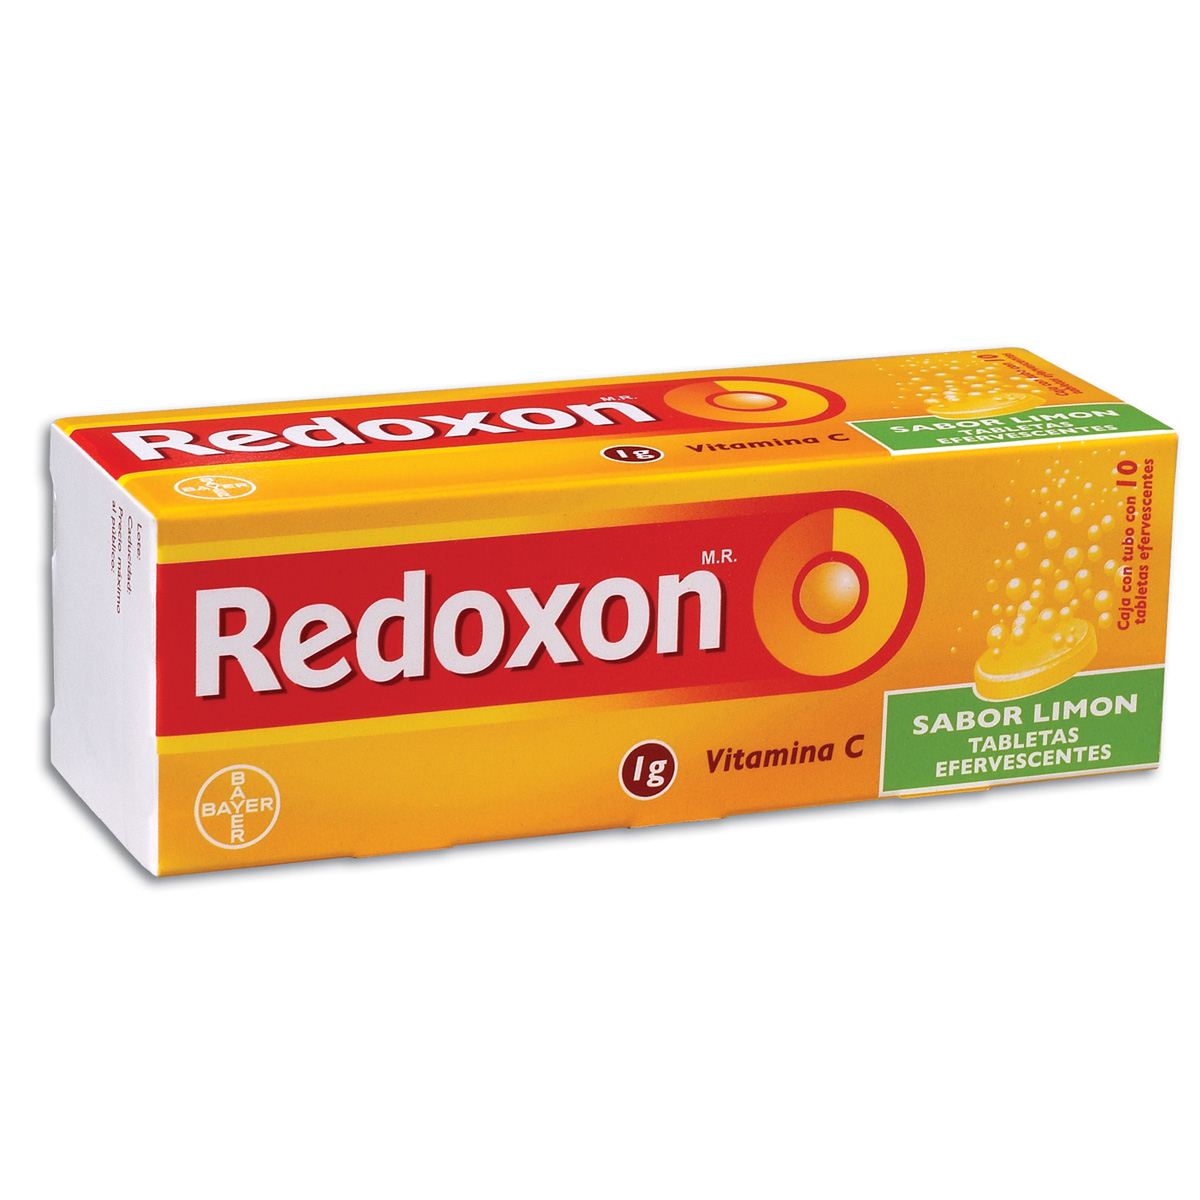 Redoxon 1g